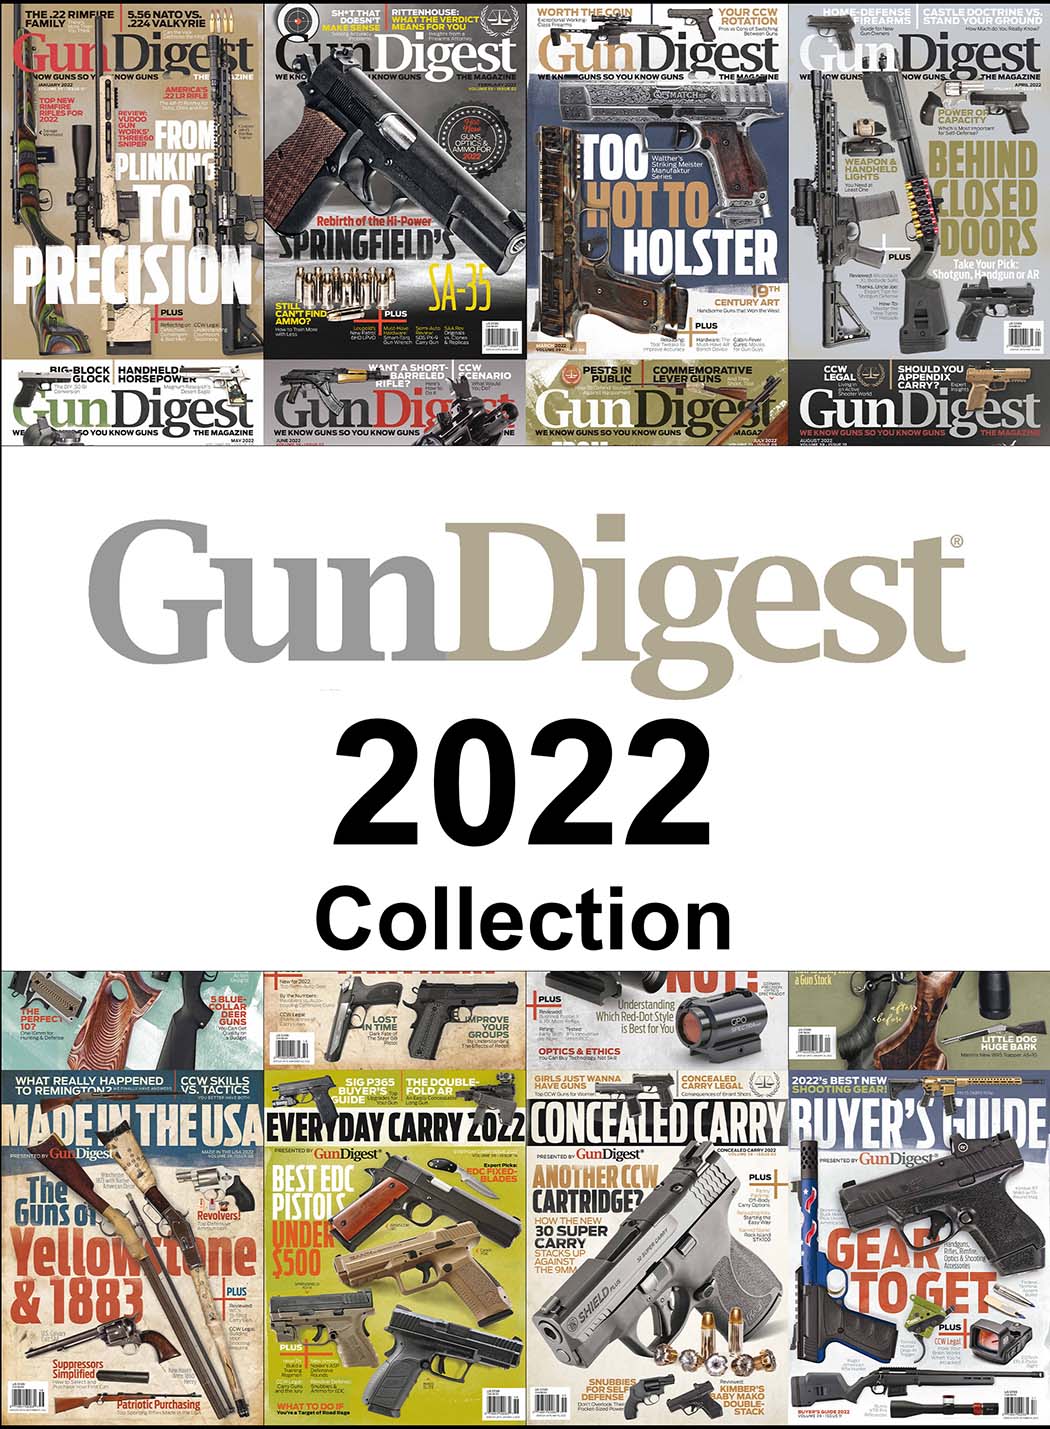 Complete 2022 Gun Digest Magazine Collection